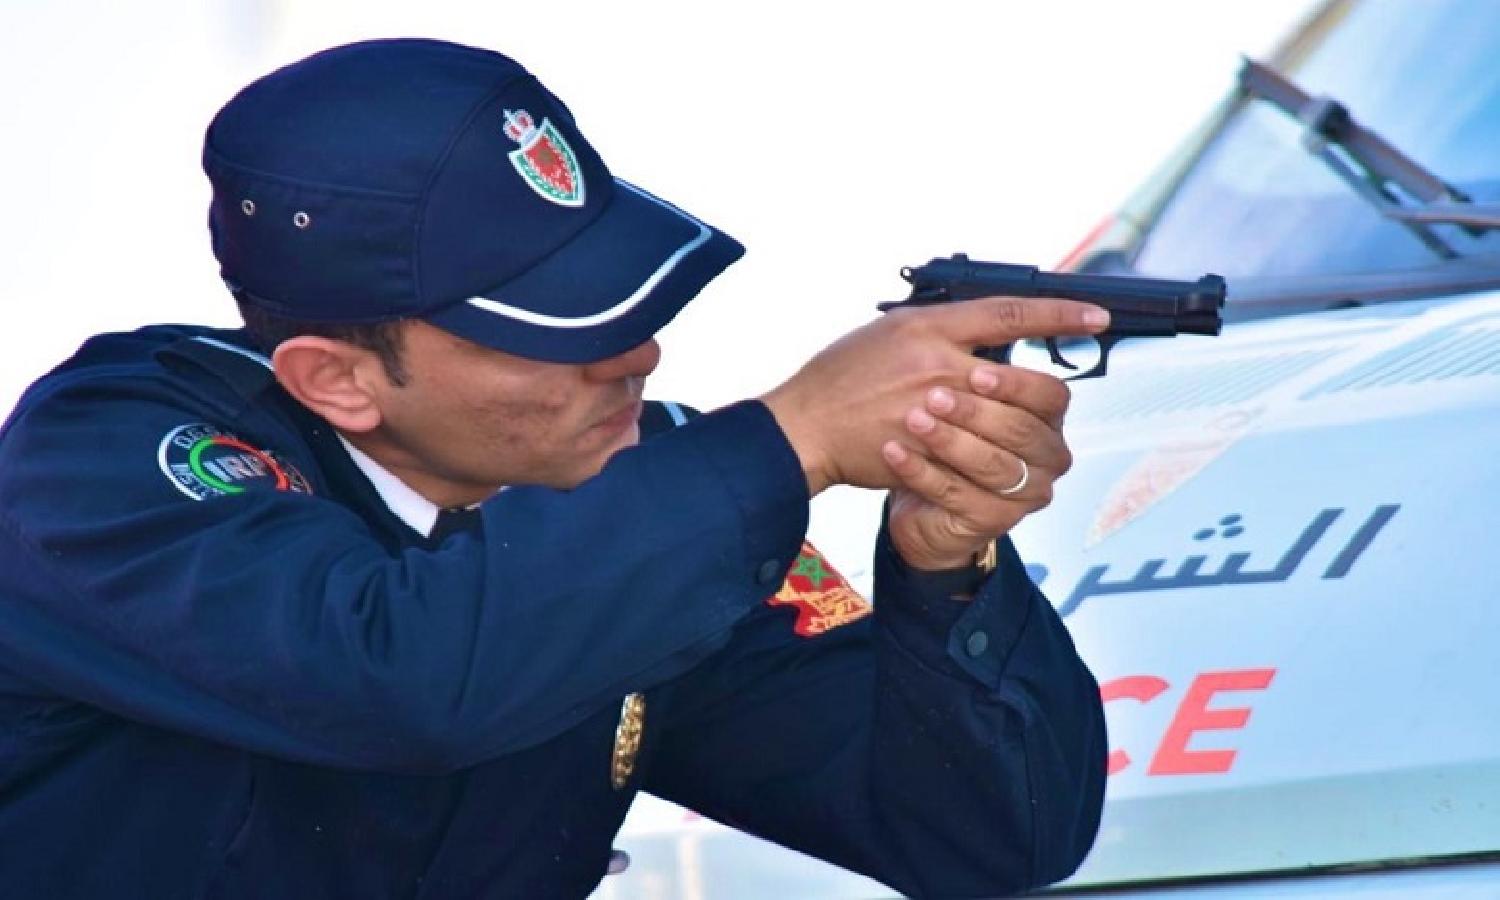 مقدم شرطة يضطر لاستعمال مسدسه اثناء عملية توقيف مروج مخدرات